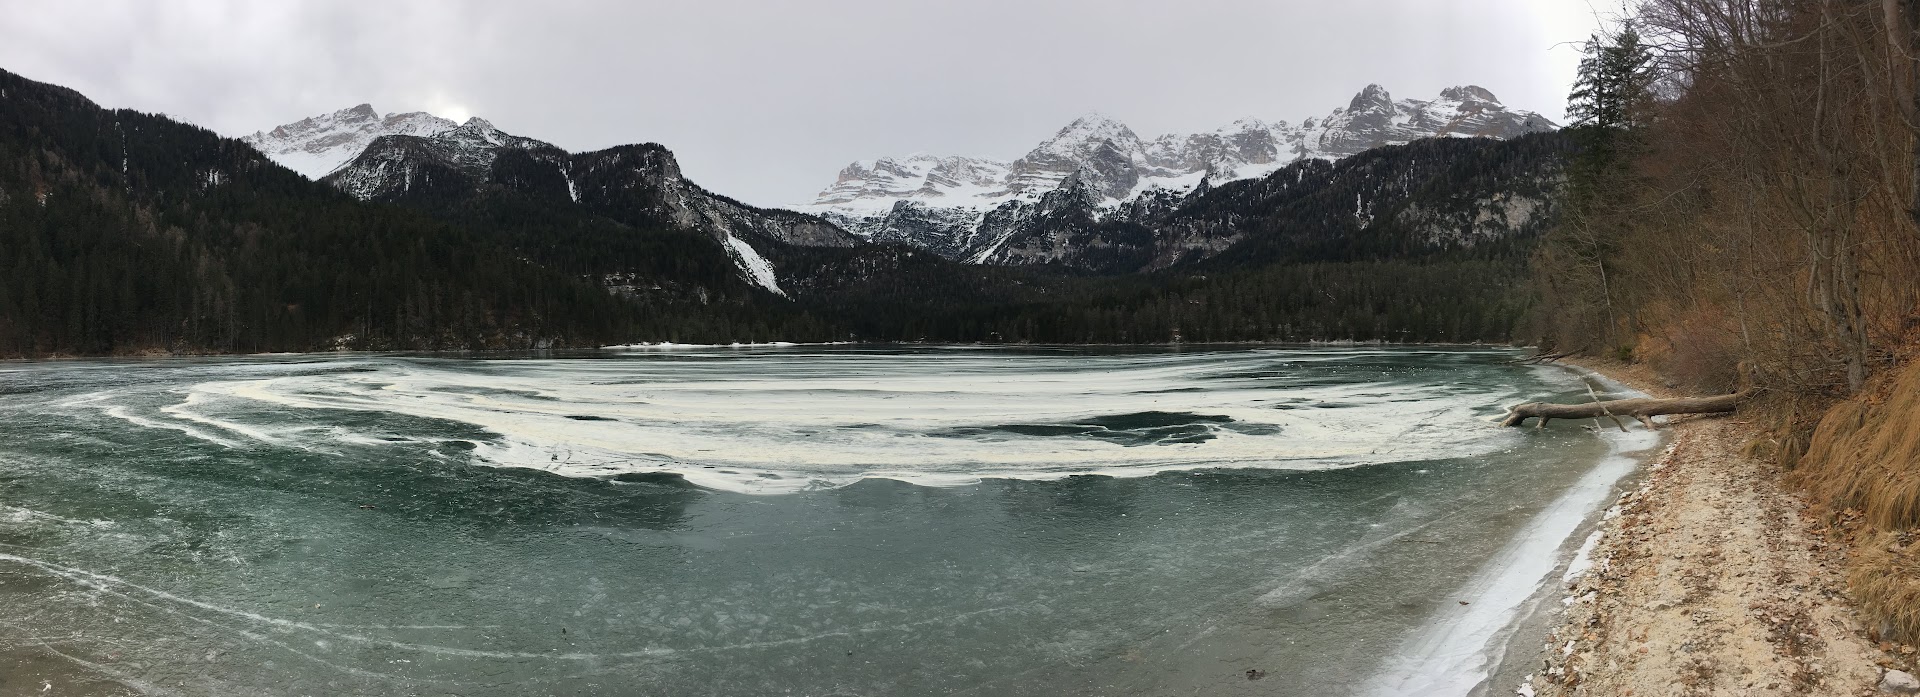 lago-tovel-inverno-ghiaccio